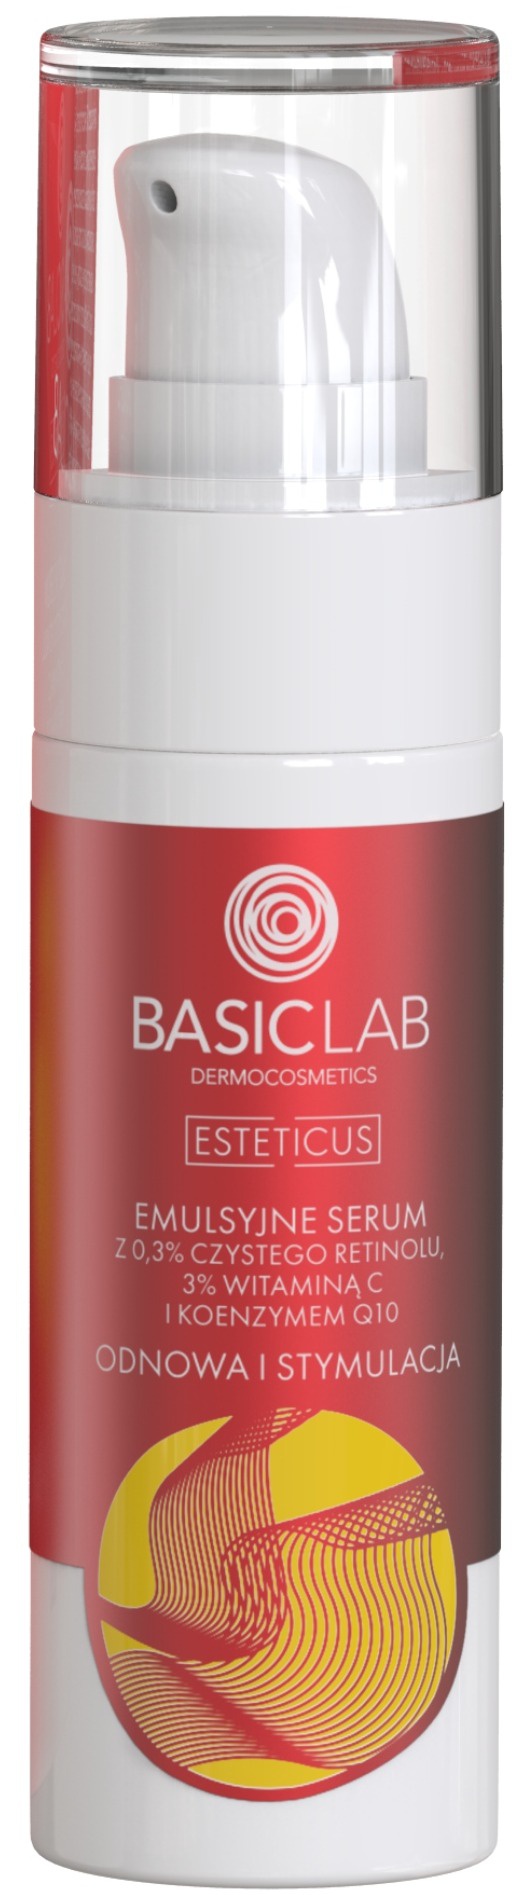 Basiclab , Esteticus, Emulsyjne Serum Z 0,3% Czystego Retinolu, 3% Witaminą C I Koenzymem Q10